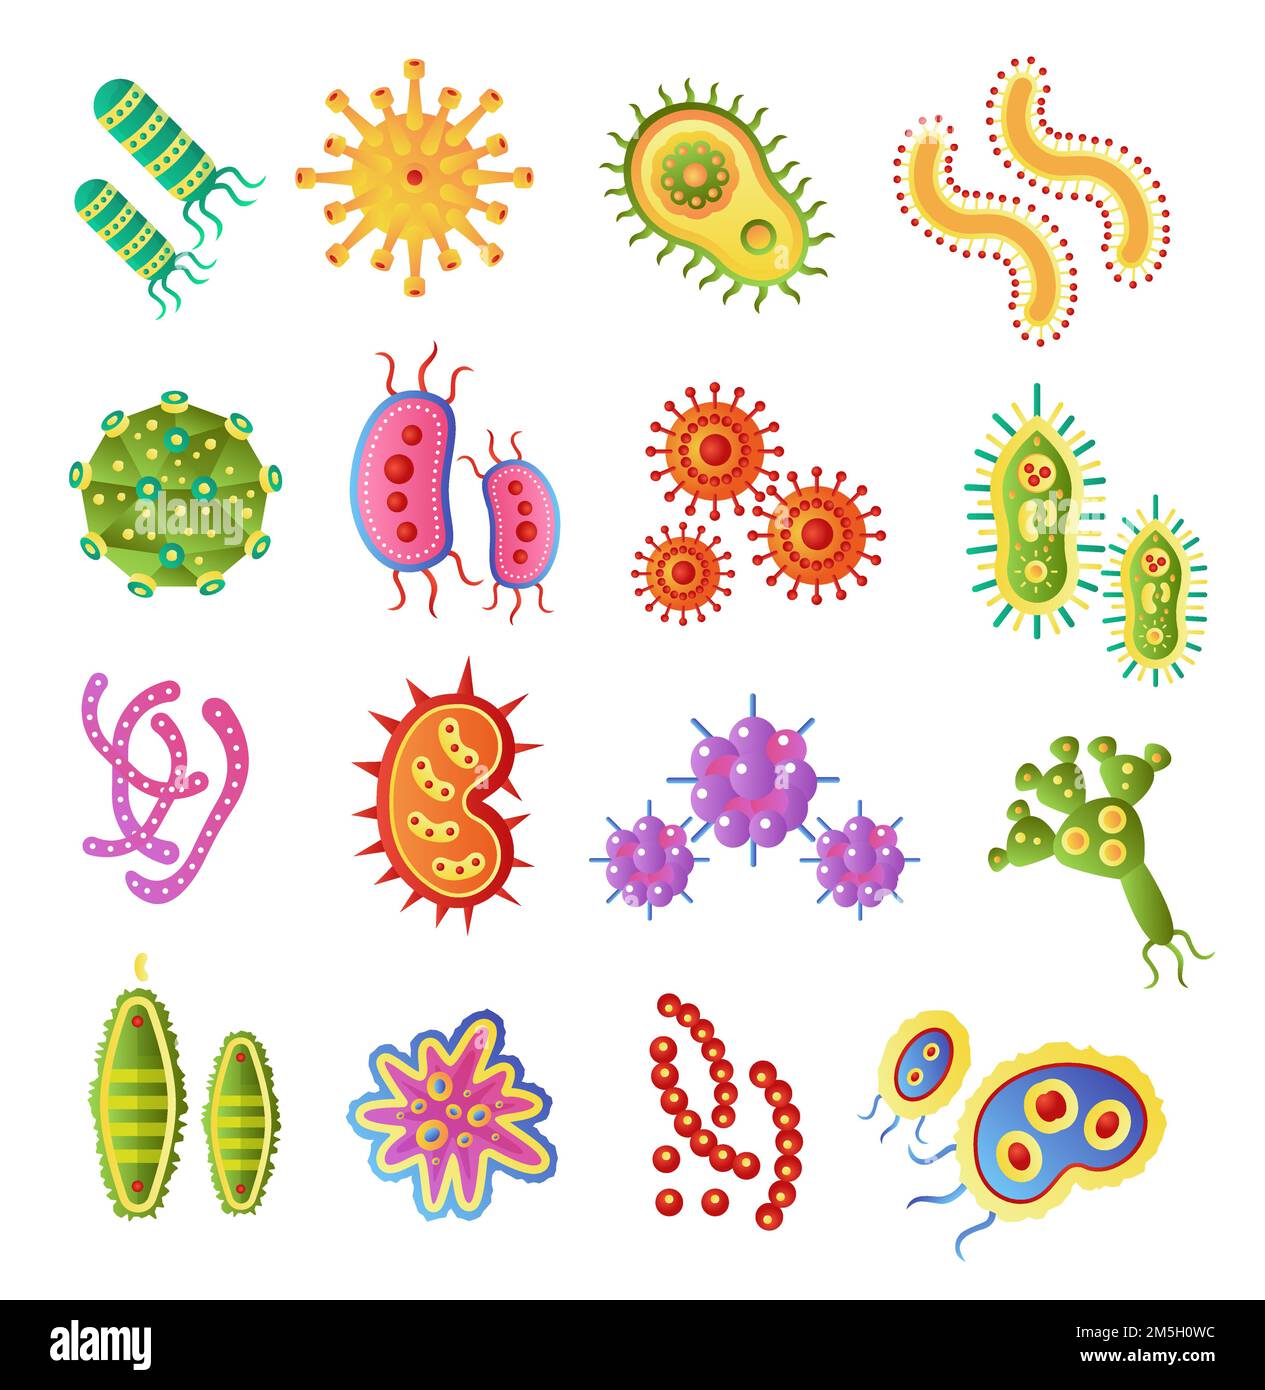 Icônes de biologie des bactéries infectieuses et des vecteurs de virus pandémique.Ilustration de bactéries plates vectorielles.Micro-organisme, allergène isolé sur le dos blanc Illustration de Vecteur